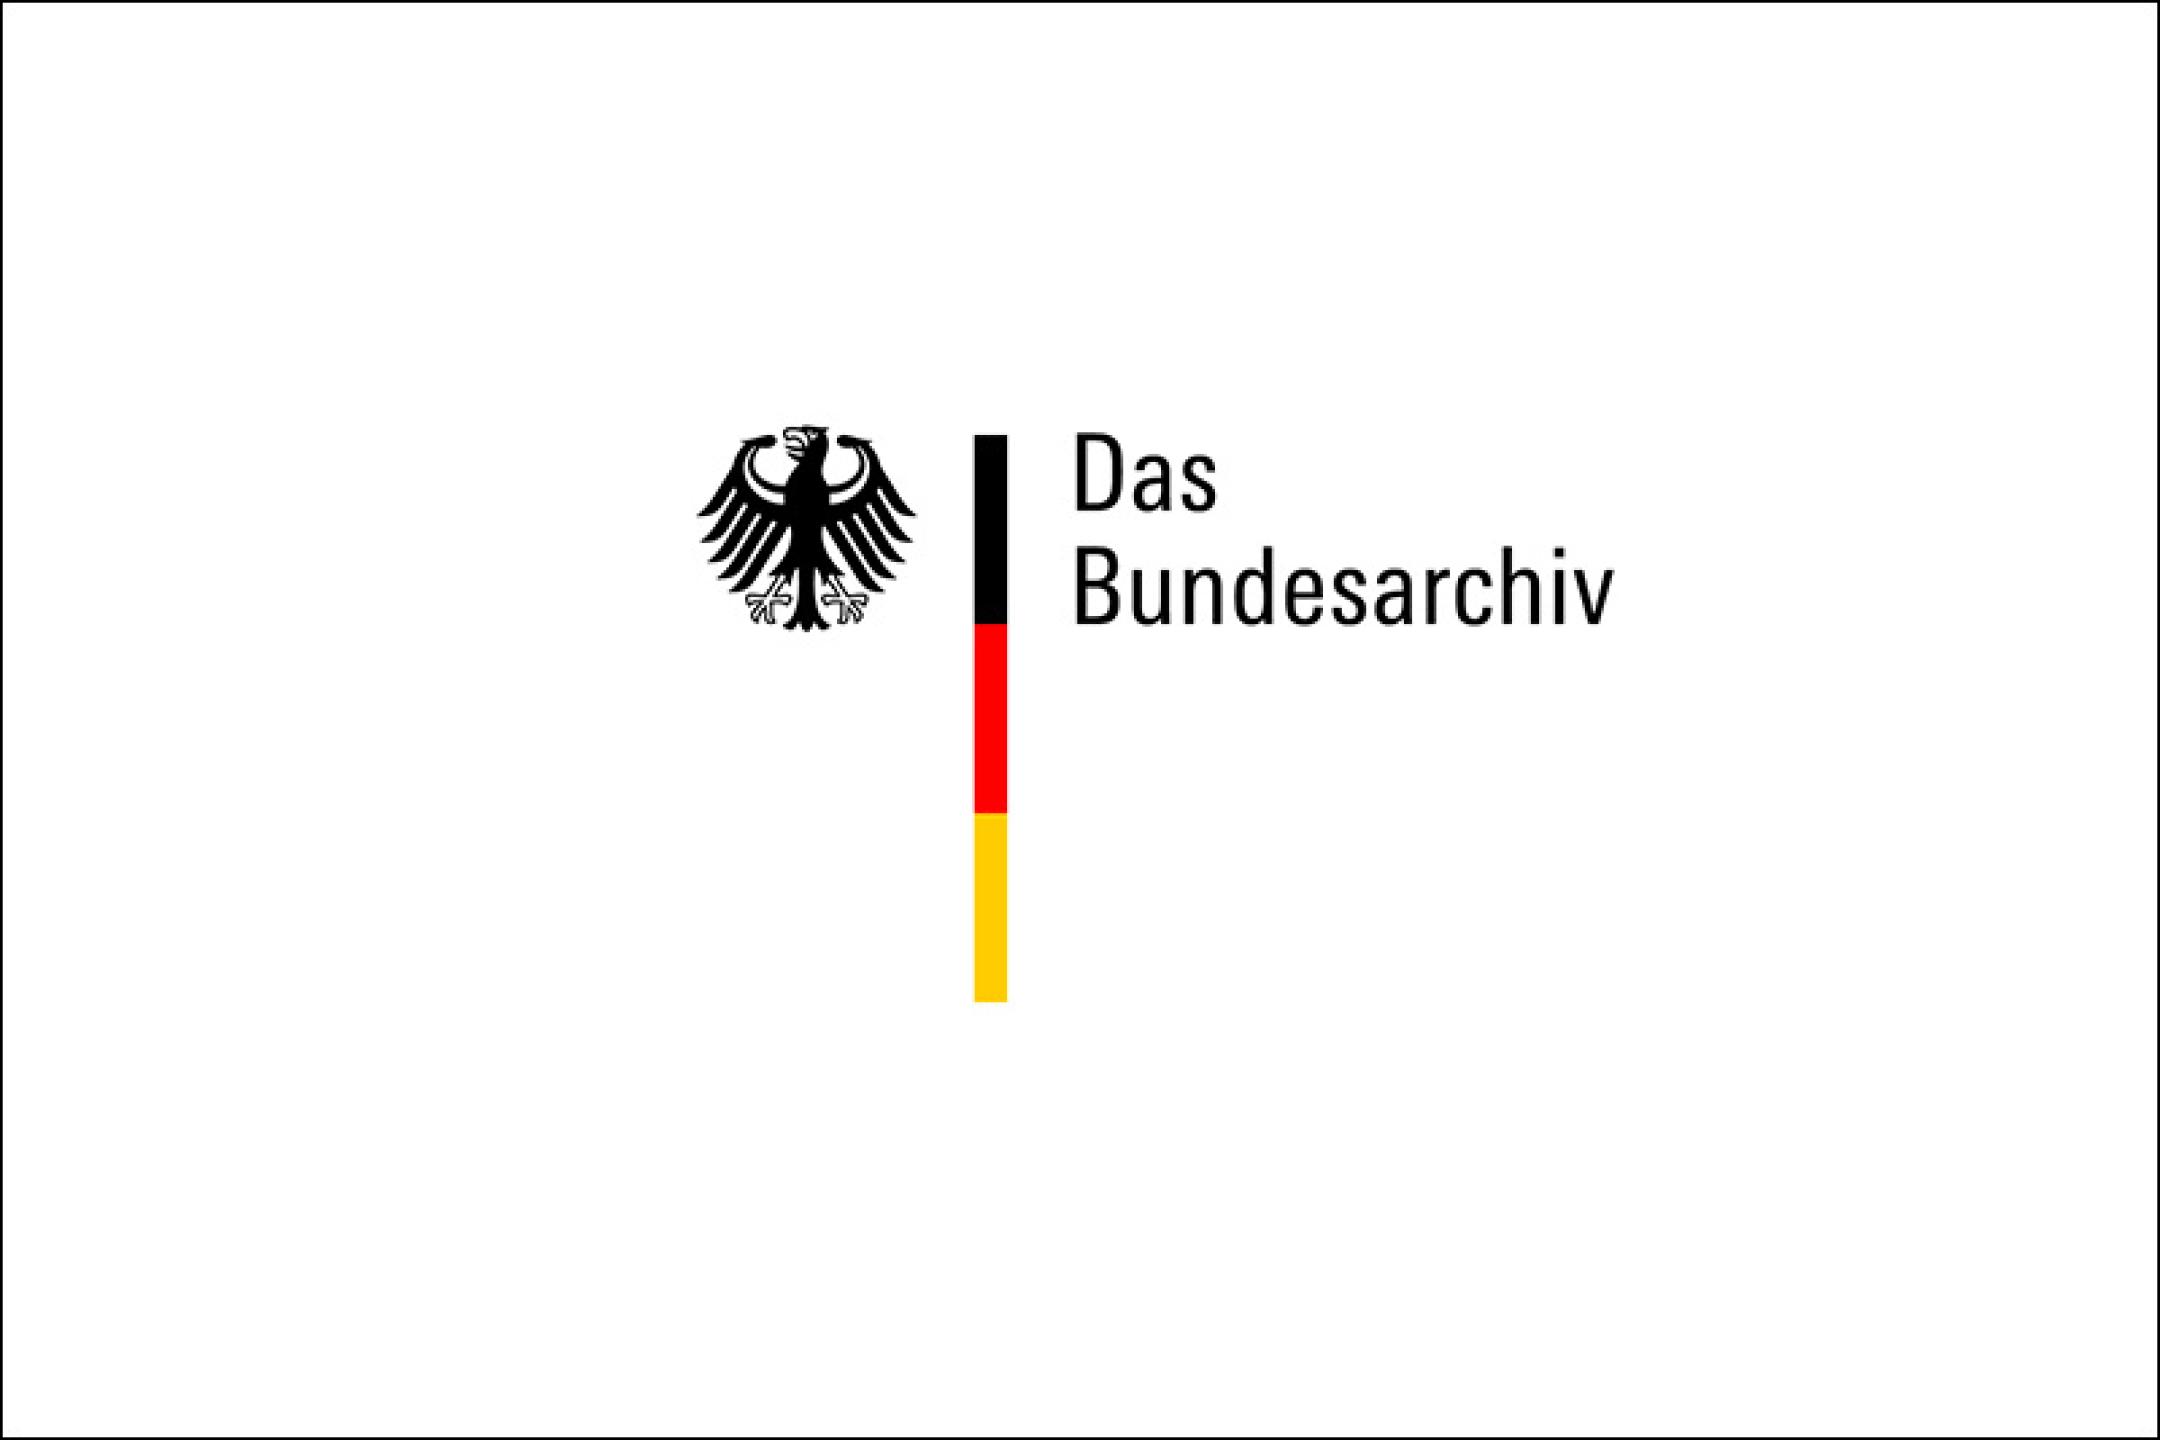 Logo Bundesarchiv Germany on white background